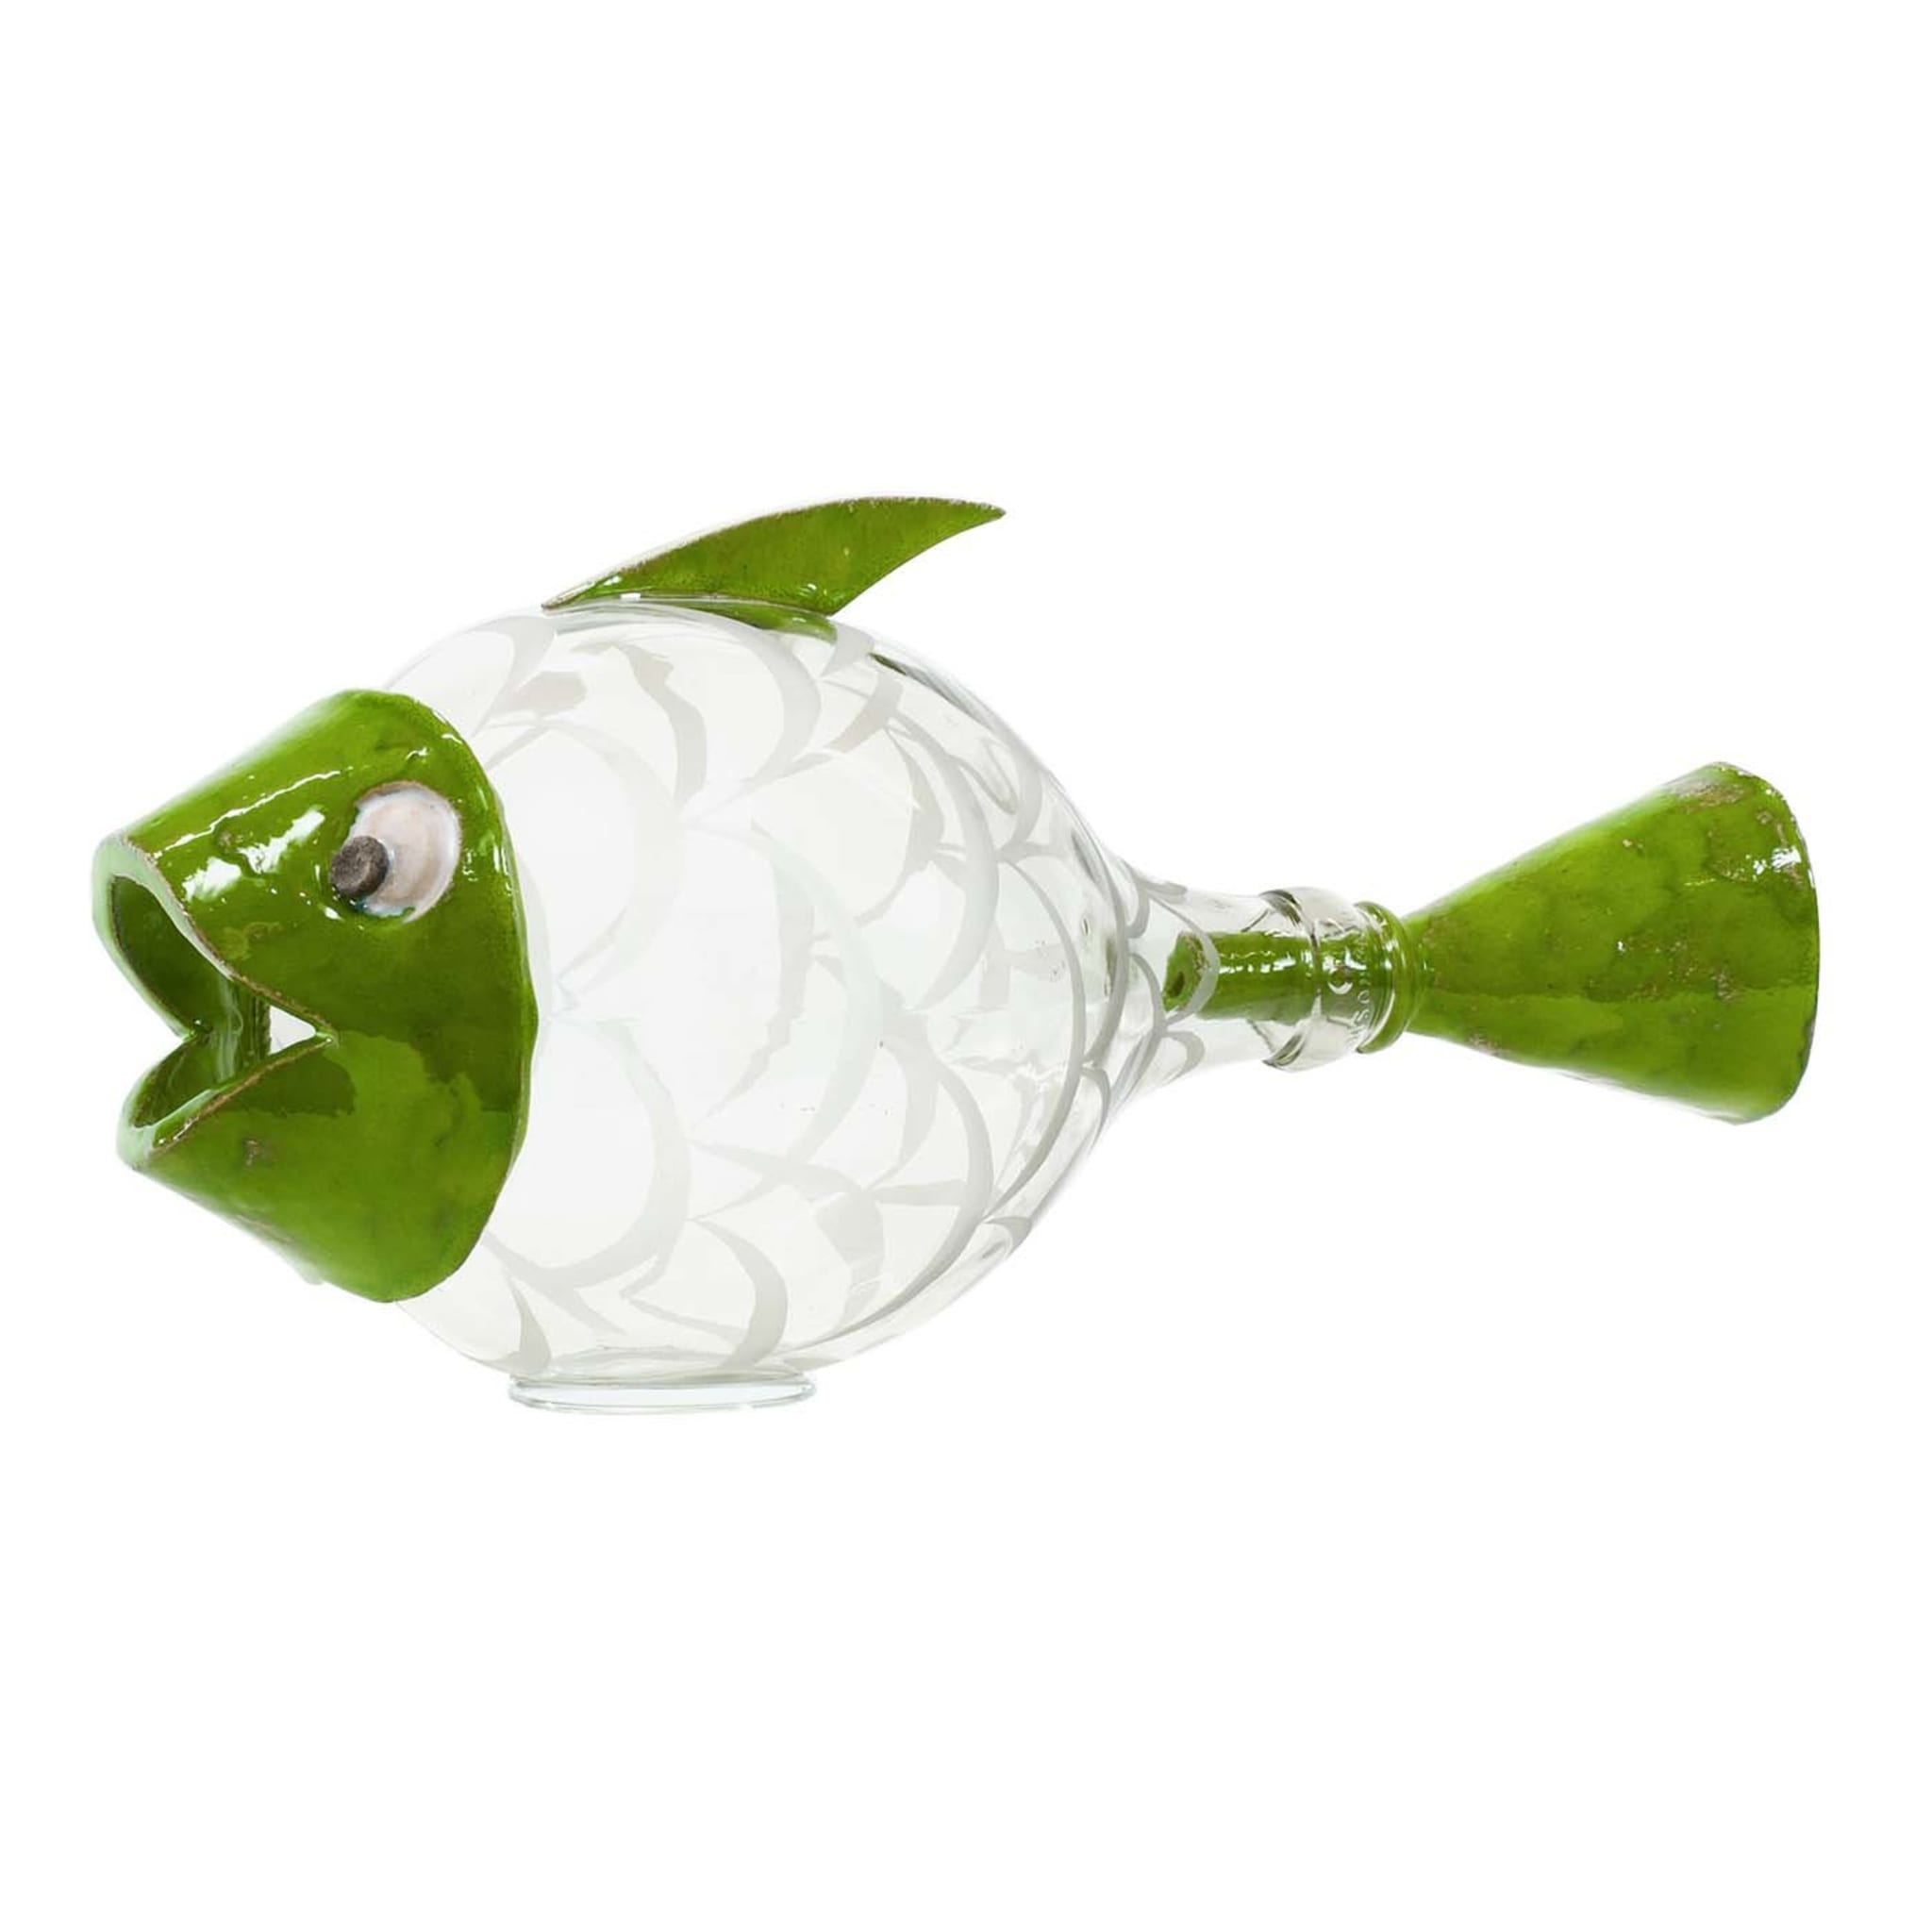 Escultura verde Pesce Palla - Vista principal